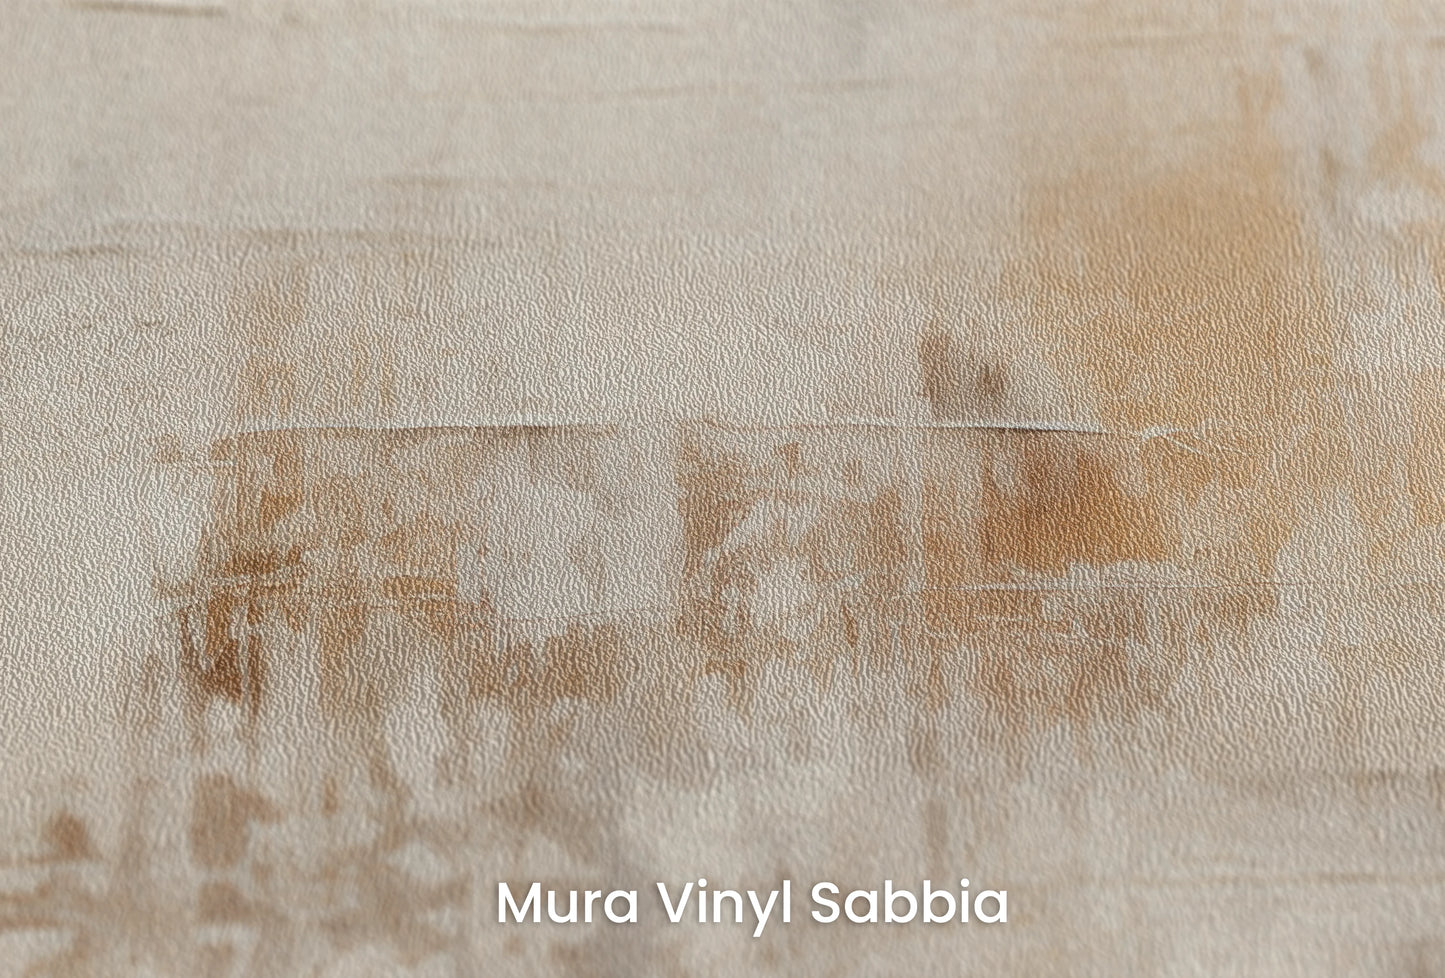 Zbliżenie na artystyczną fototapetę o nazwie Abstract Serenity na podłożu Mura Vinyl Sabbia struktura grubego ziarna piasku.